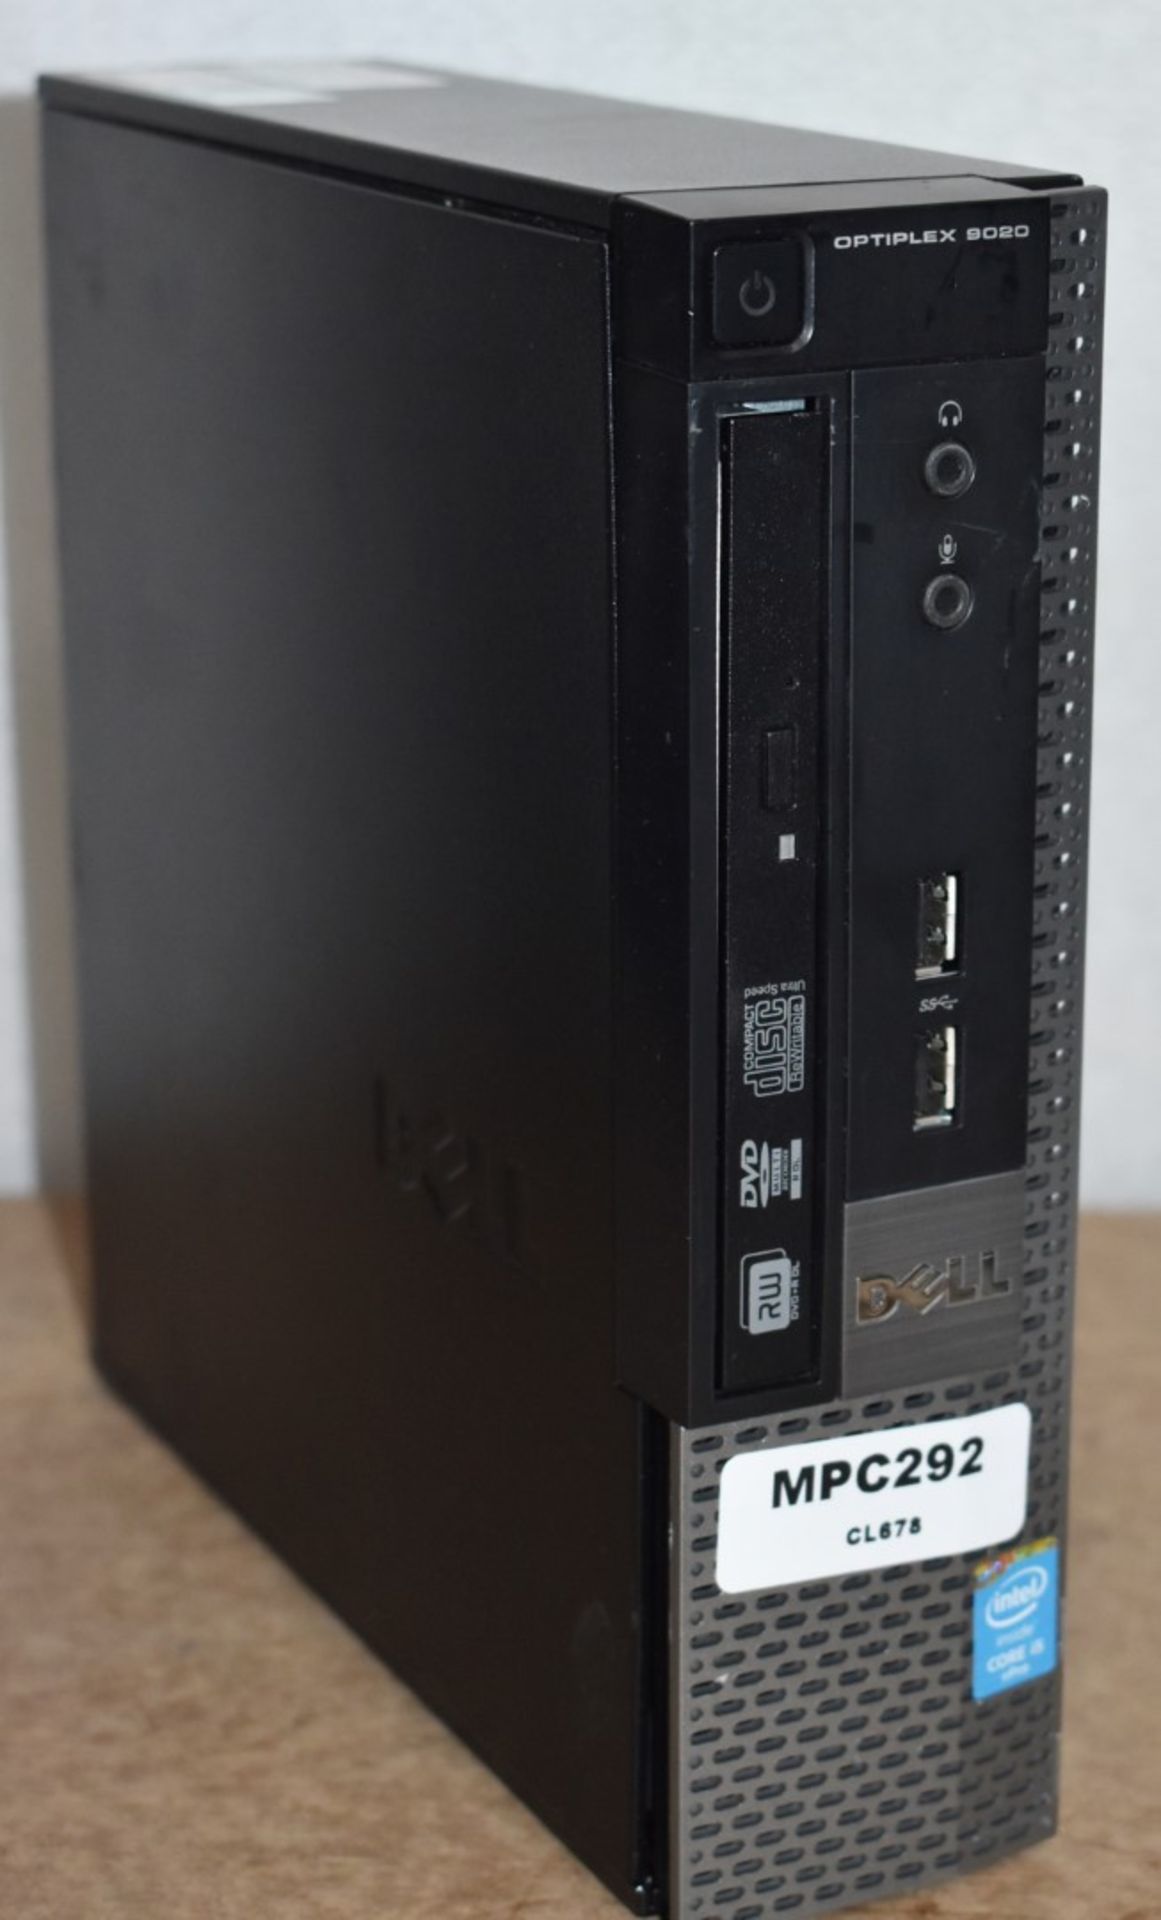 1 x Dell Optiplex 9020 Small Form Fact Desktop Computer - Features an Intel i5-4590S Quad Core